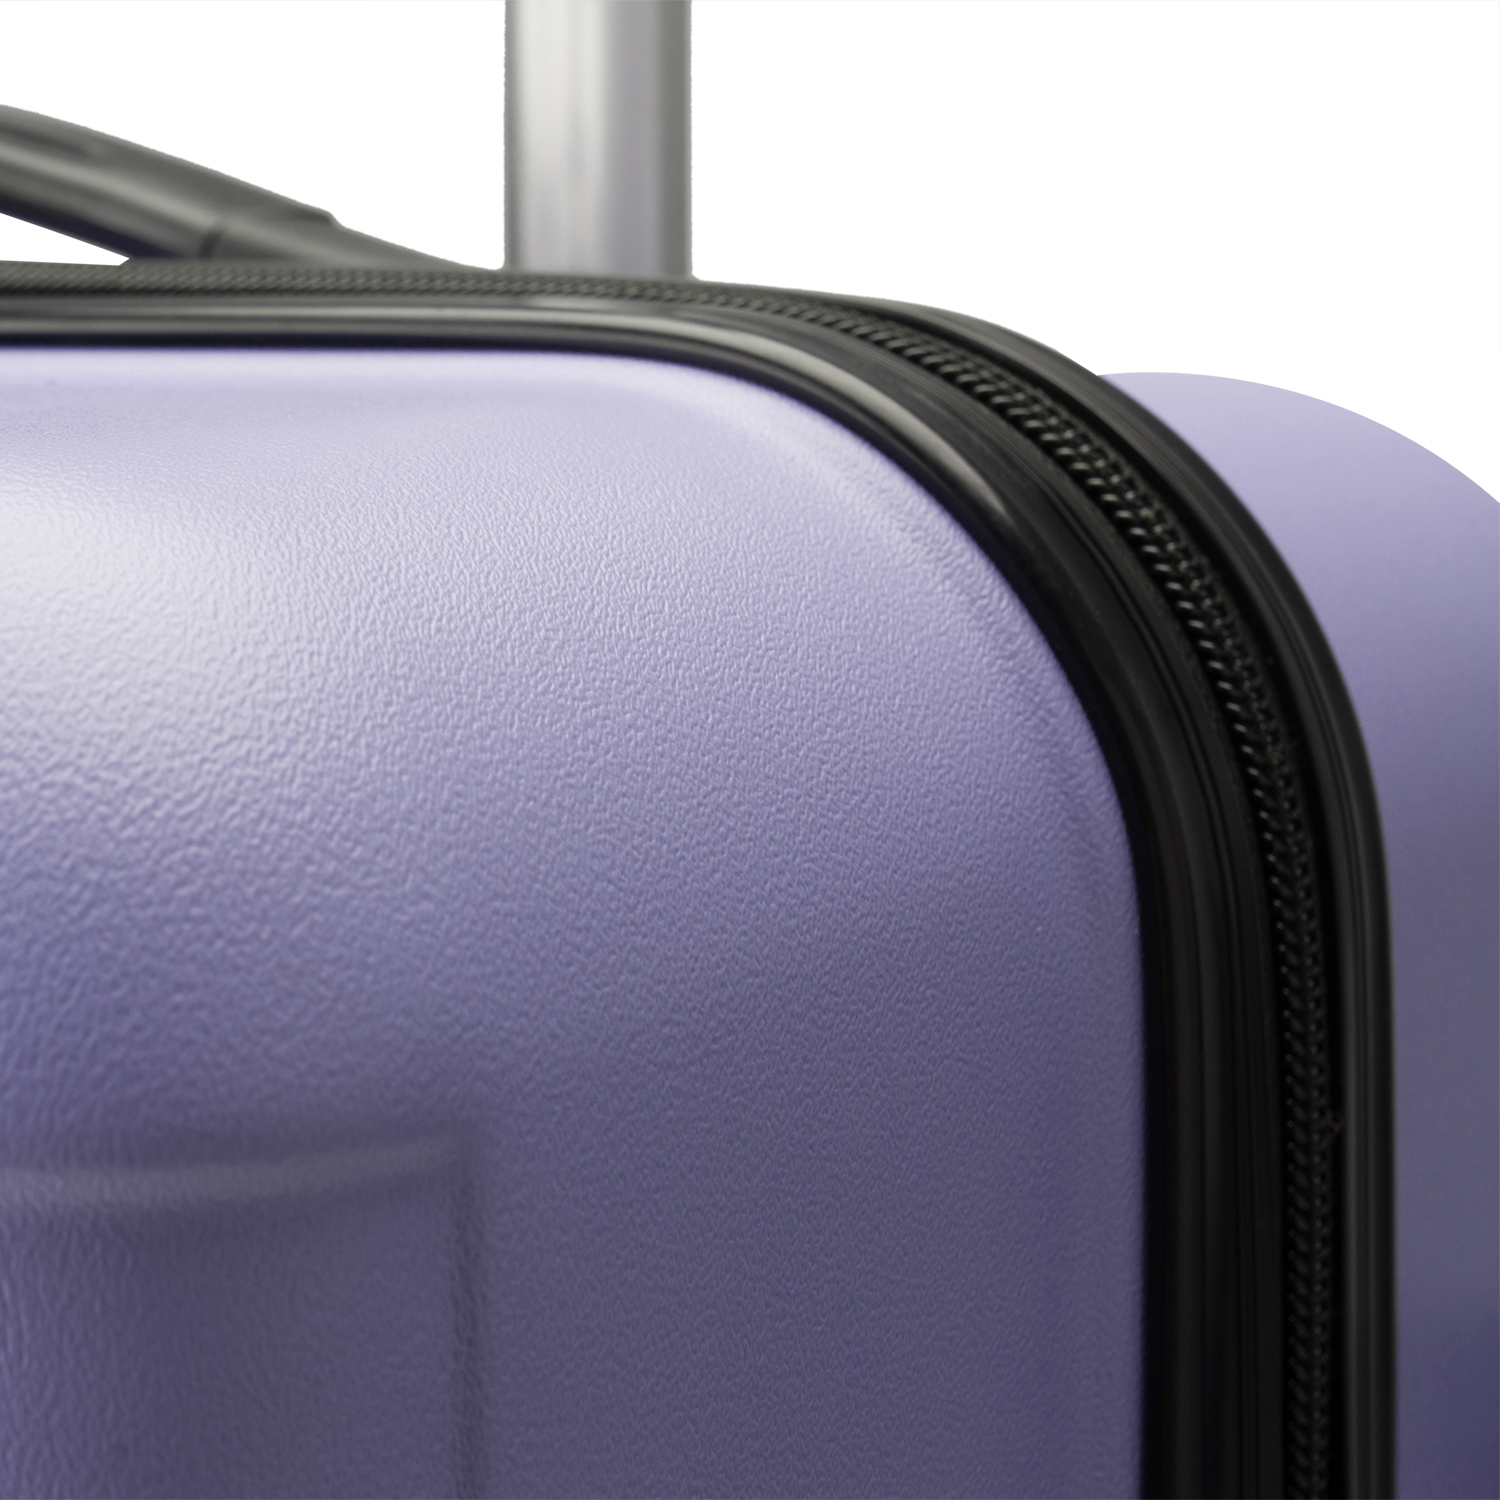 VOYAGOUX® - Travel suitcase set - 2 pieces - M/L